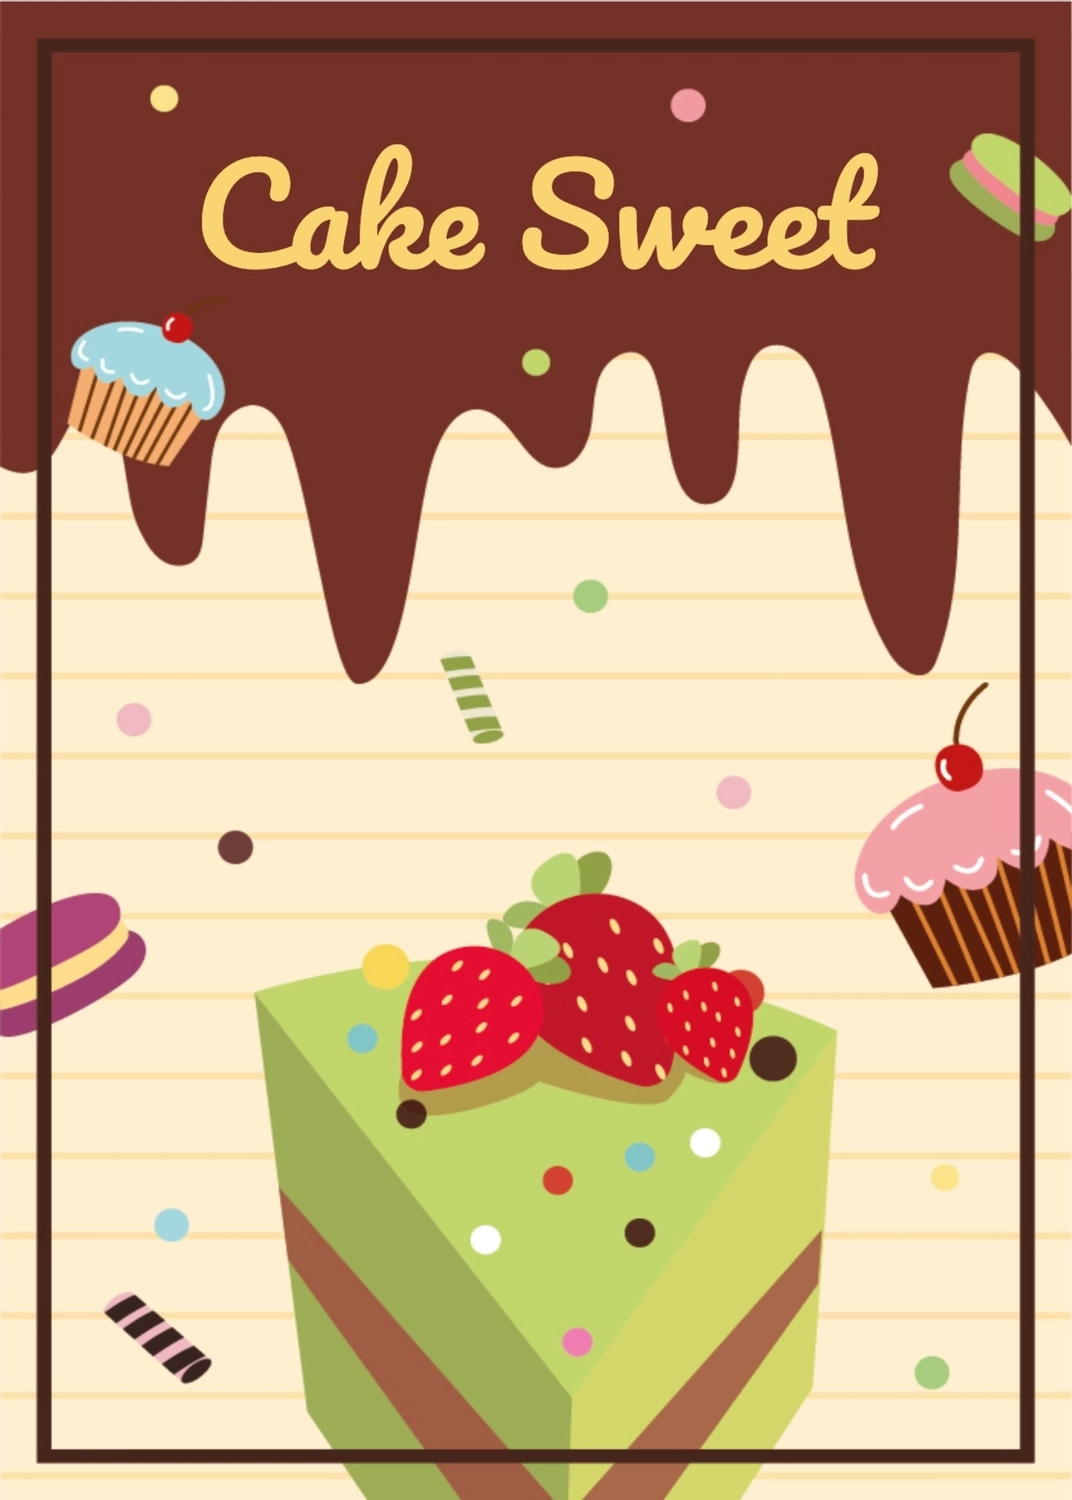 ケーキのグリーティングカード　いちごののったカットケーキ, Cake Sweet, create, design, message card template